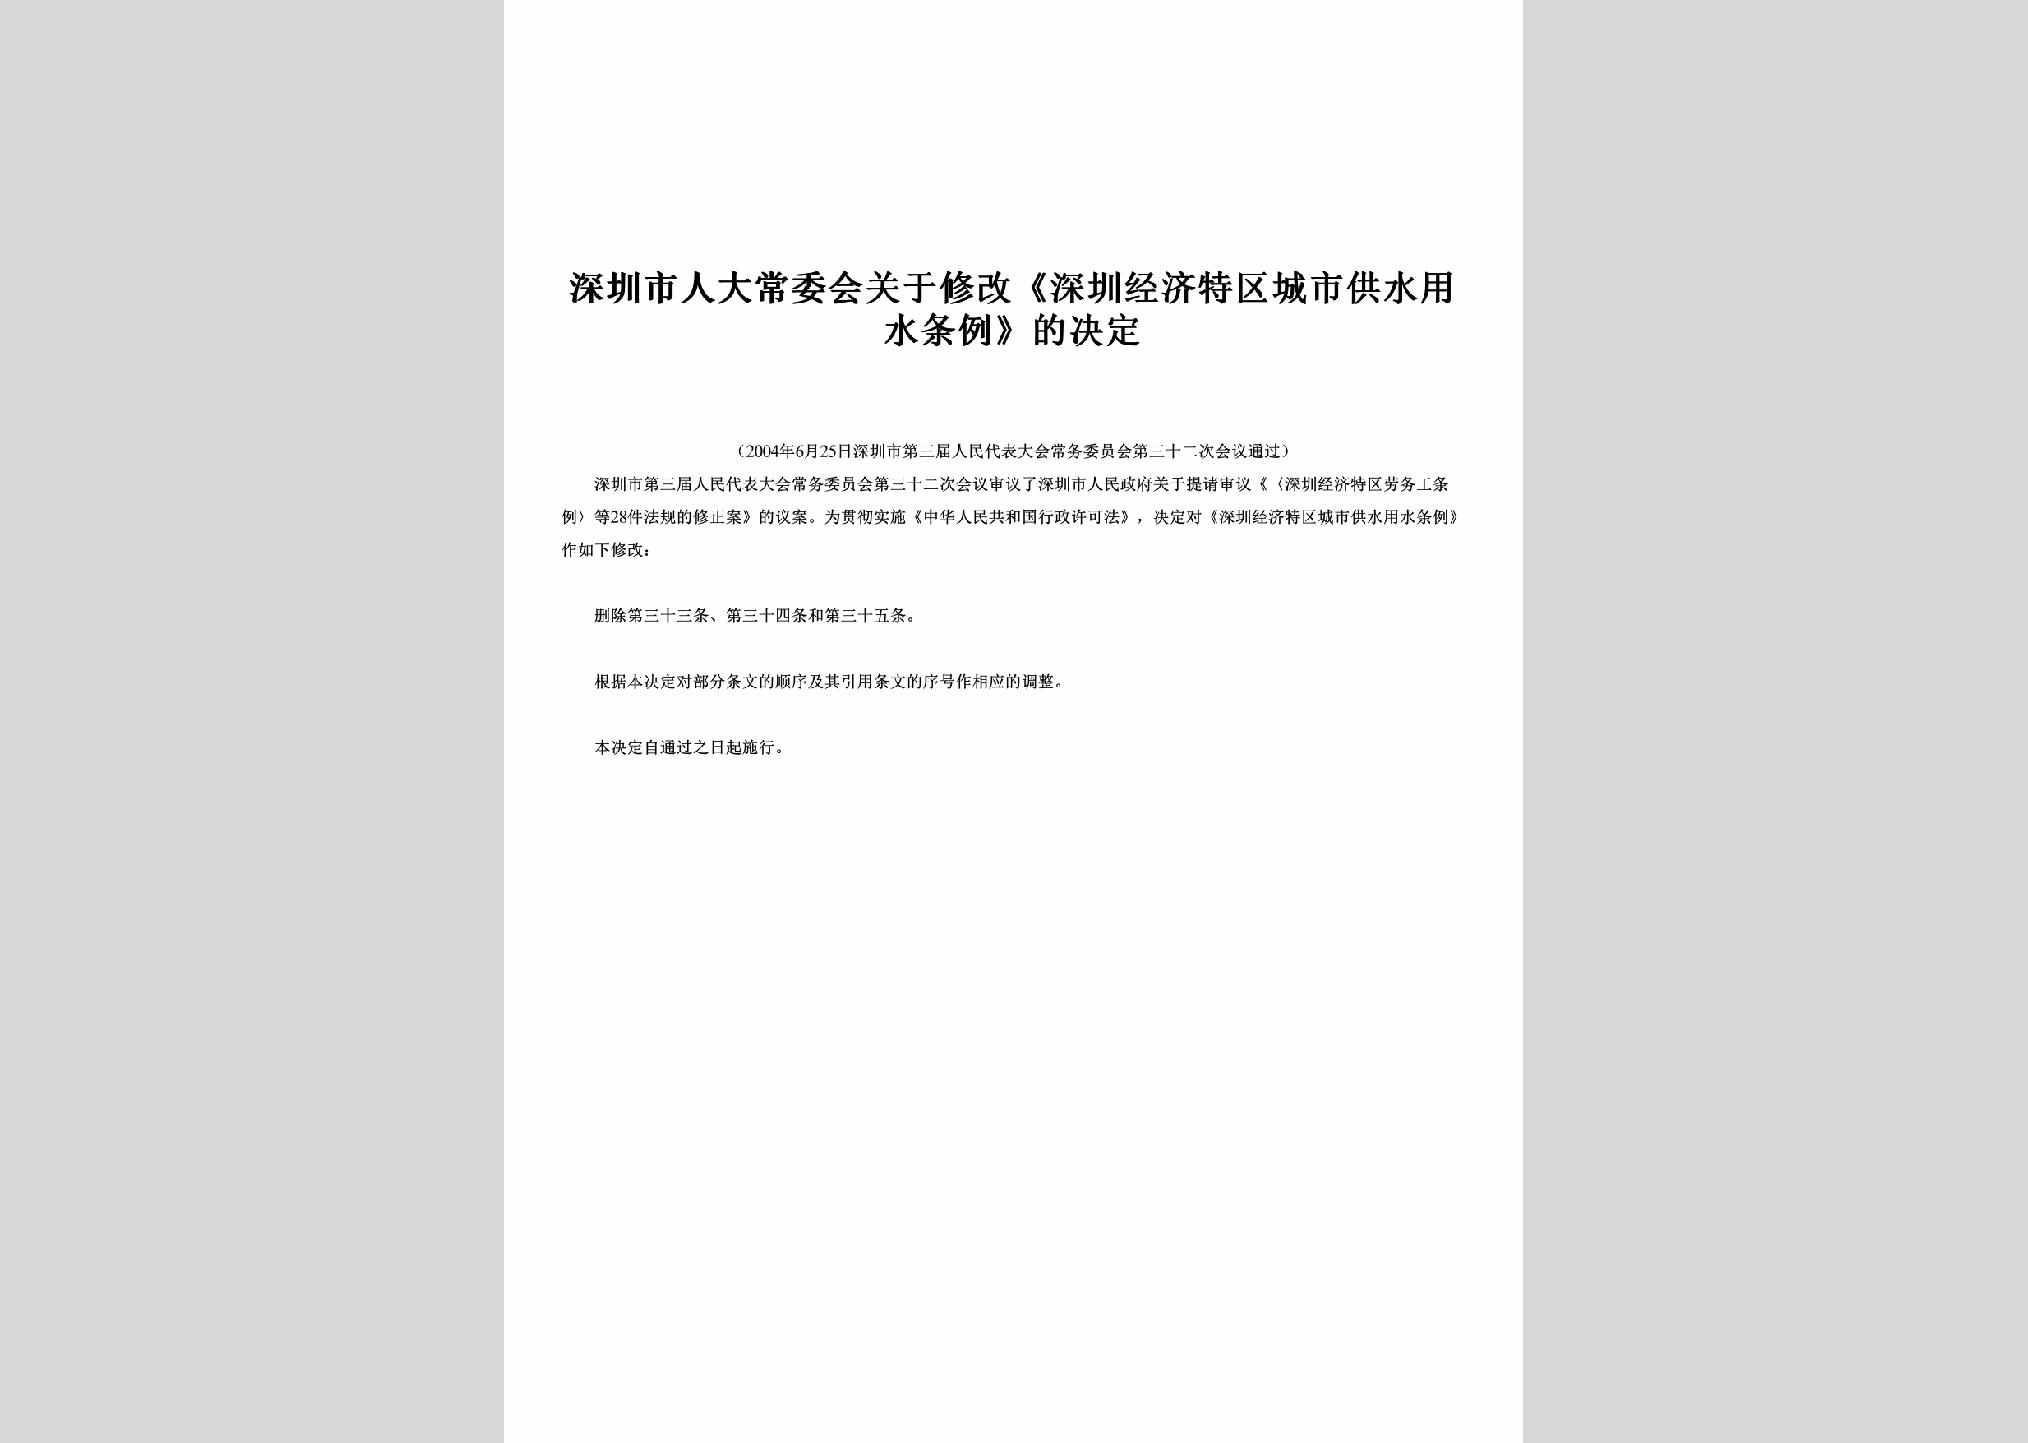 GD-CSGSTLJE-2004：关于修改《深圳经济特区城市供水用水条例》的决定